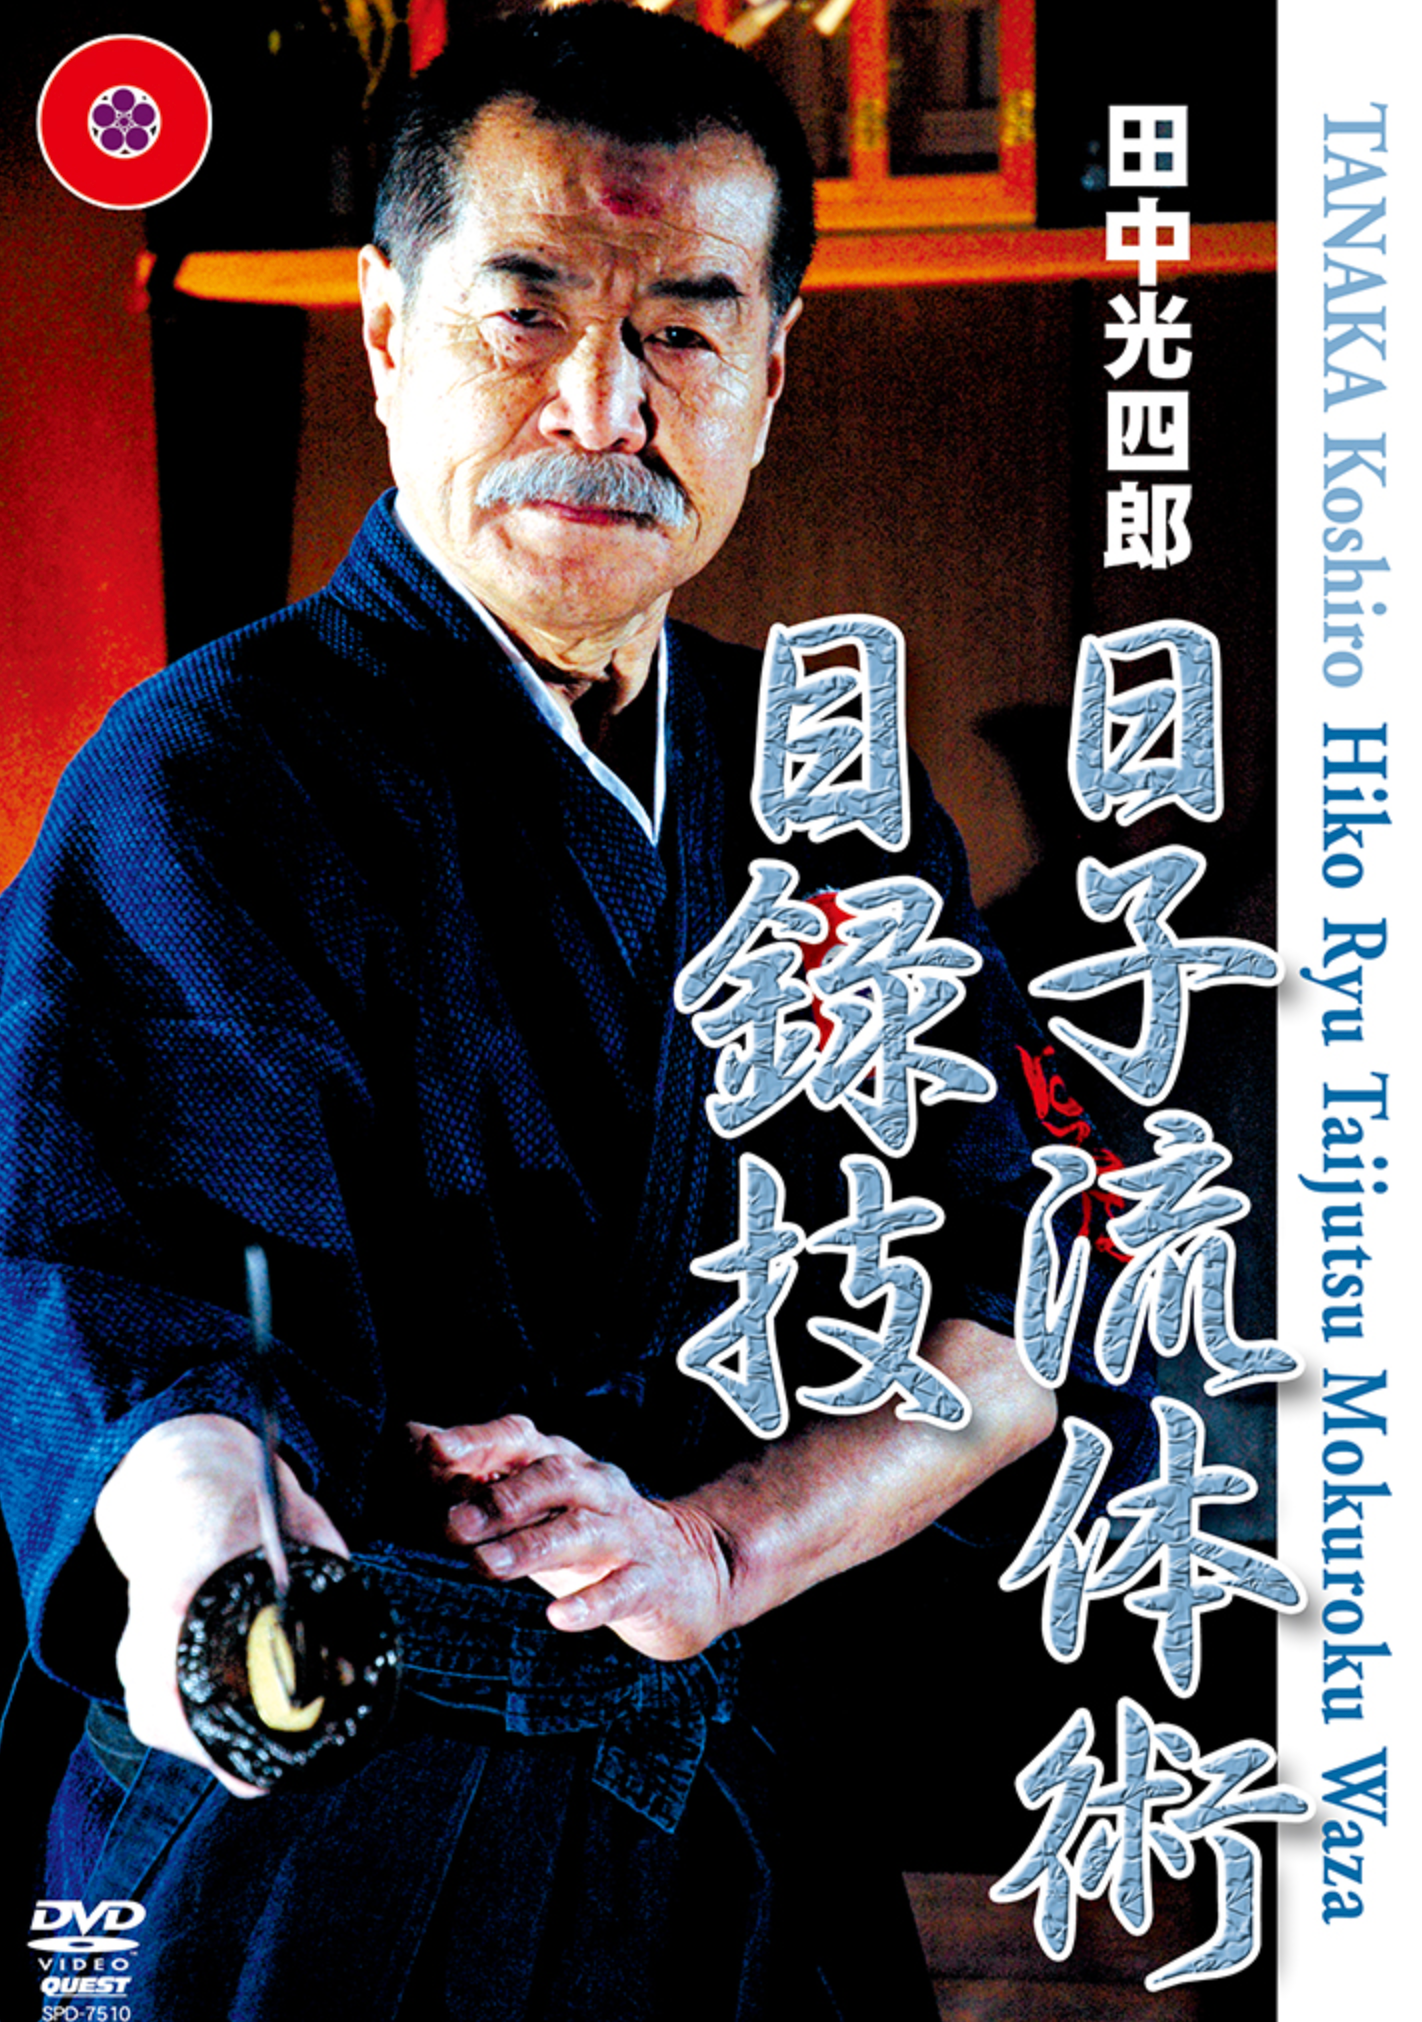 Hiko Ryu Taijutsu Mokuroku Waza DVD with Koshiro Tanaka - Budovideos Inc